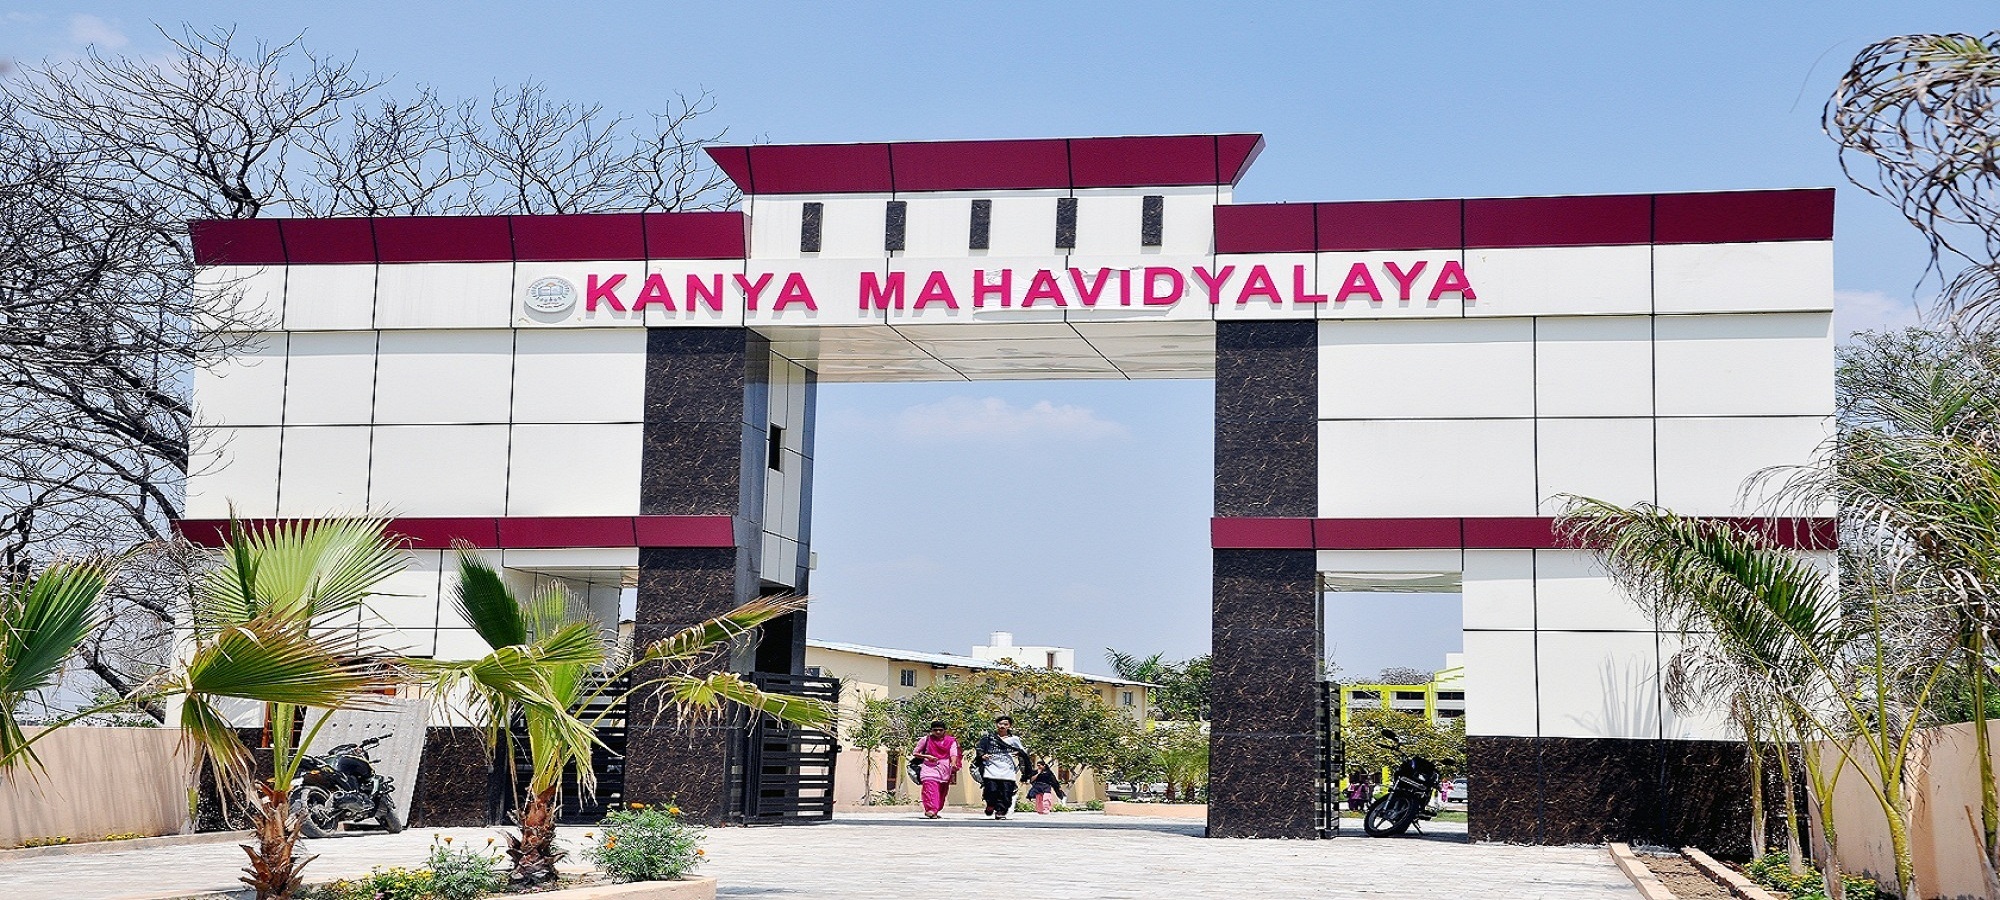 Kanya Mahavidyalaya Kharkhoda Education | Colleges